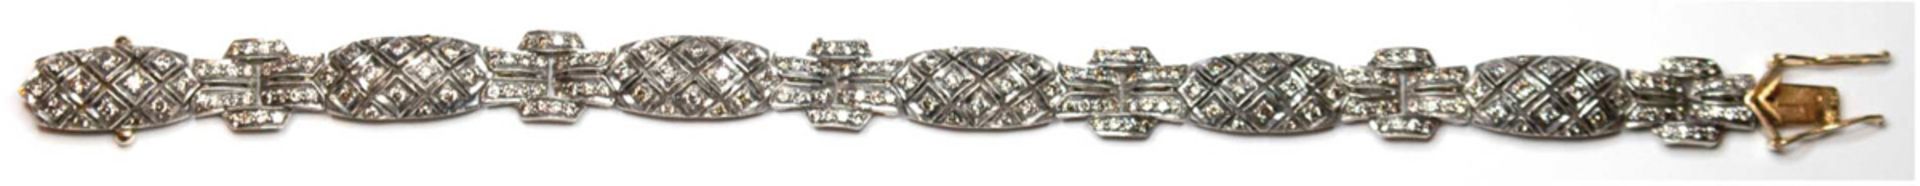 Armband im Art-Deco-Stil, 750er Gold und Silber, Brillanten 3,3 ct., Länge ca. 19 cm,Breite ca. 1,